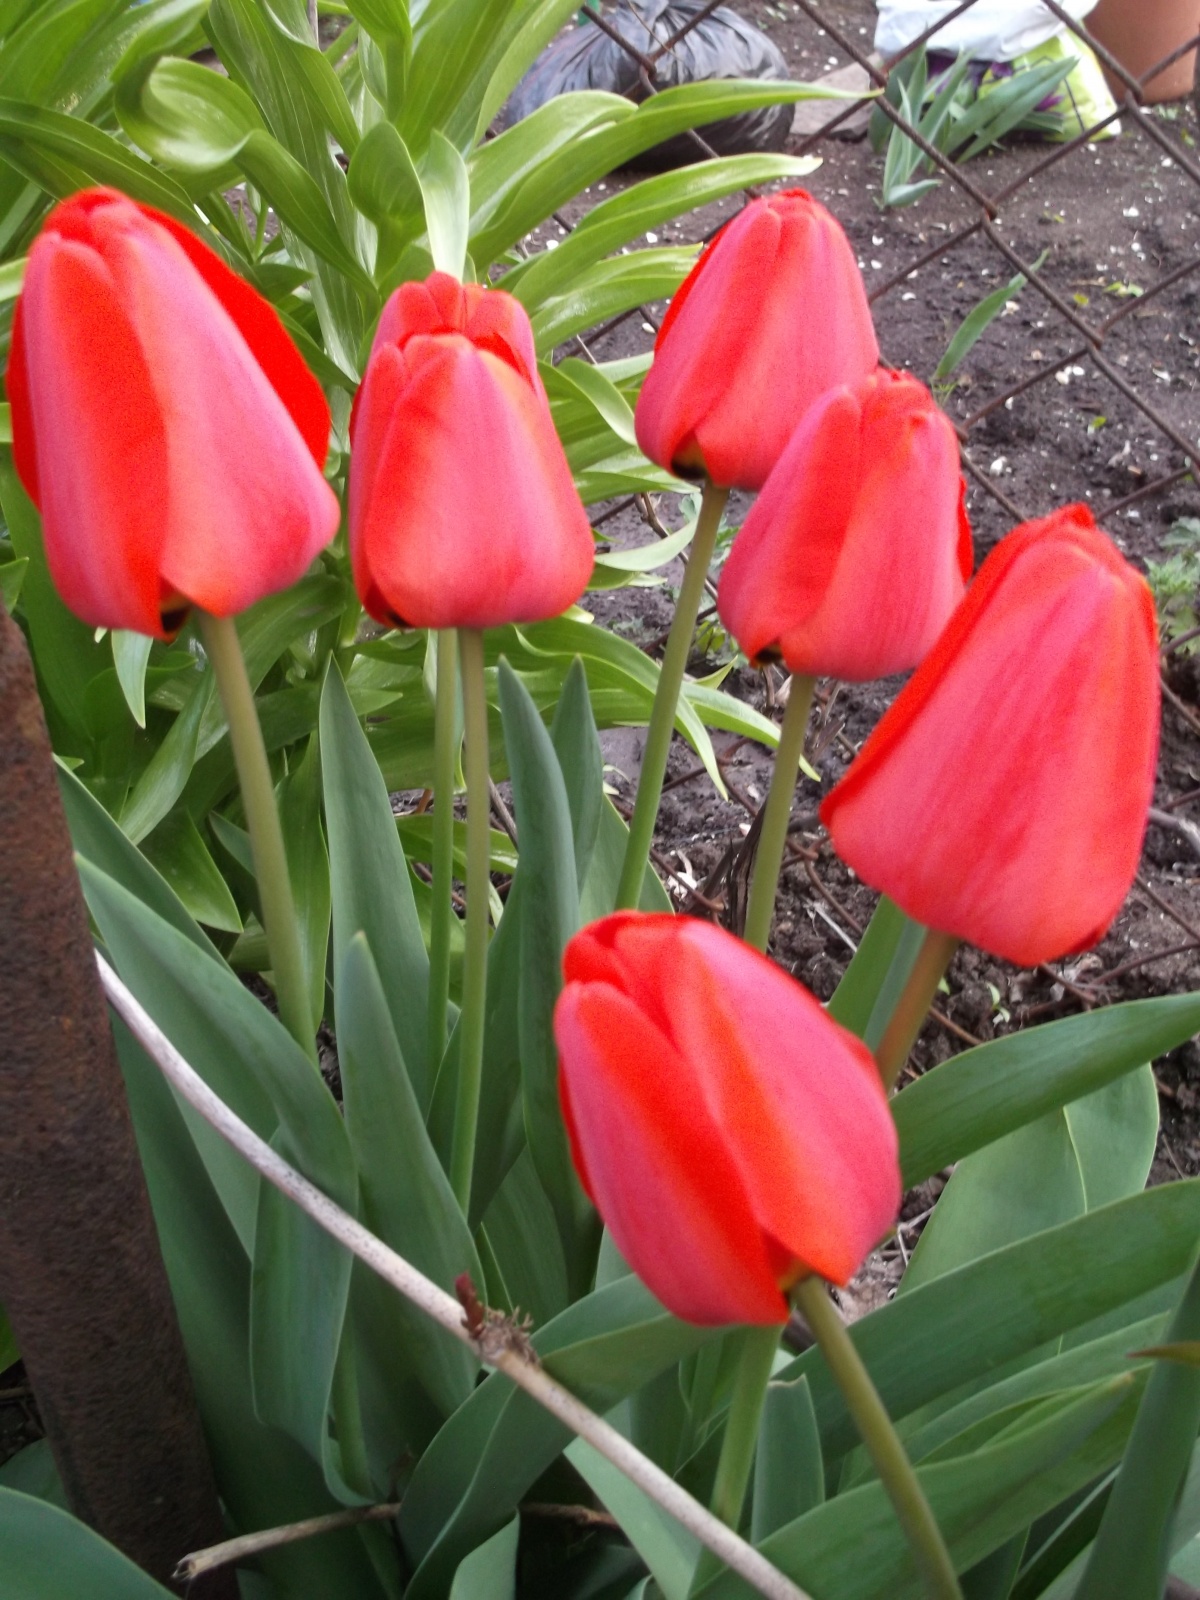 Тюльпаны бывают разные - желтые, белые, красные...